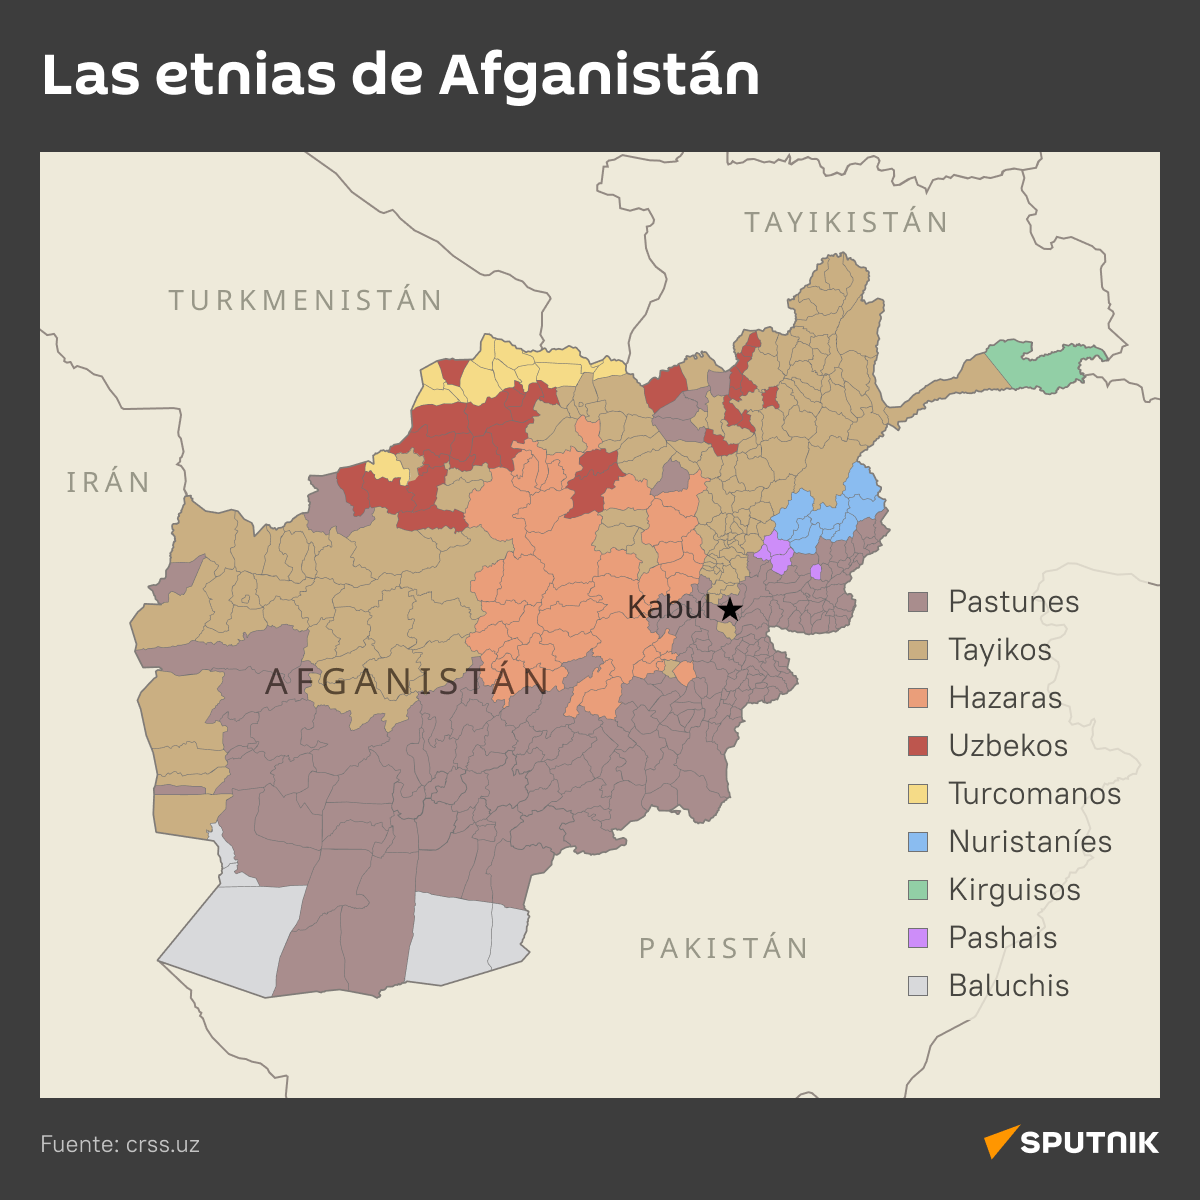 Las etnias de Afganistán - Sputnik Mundo